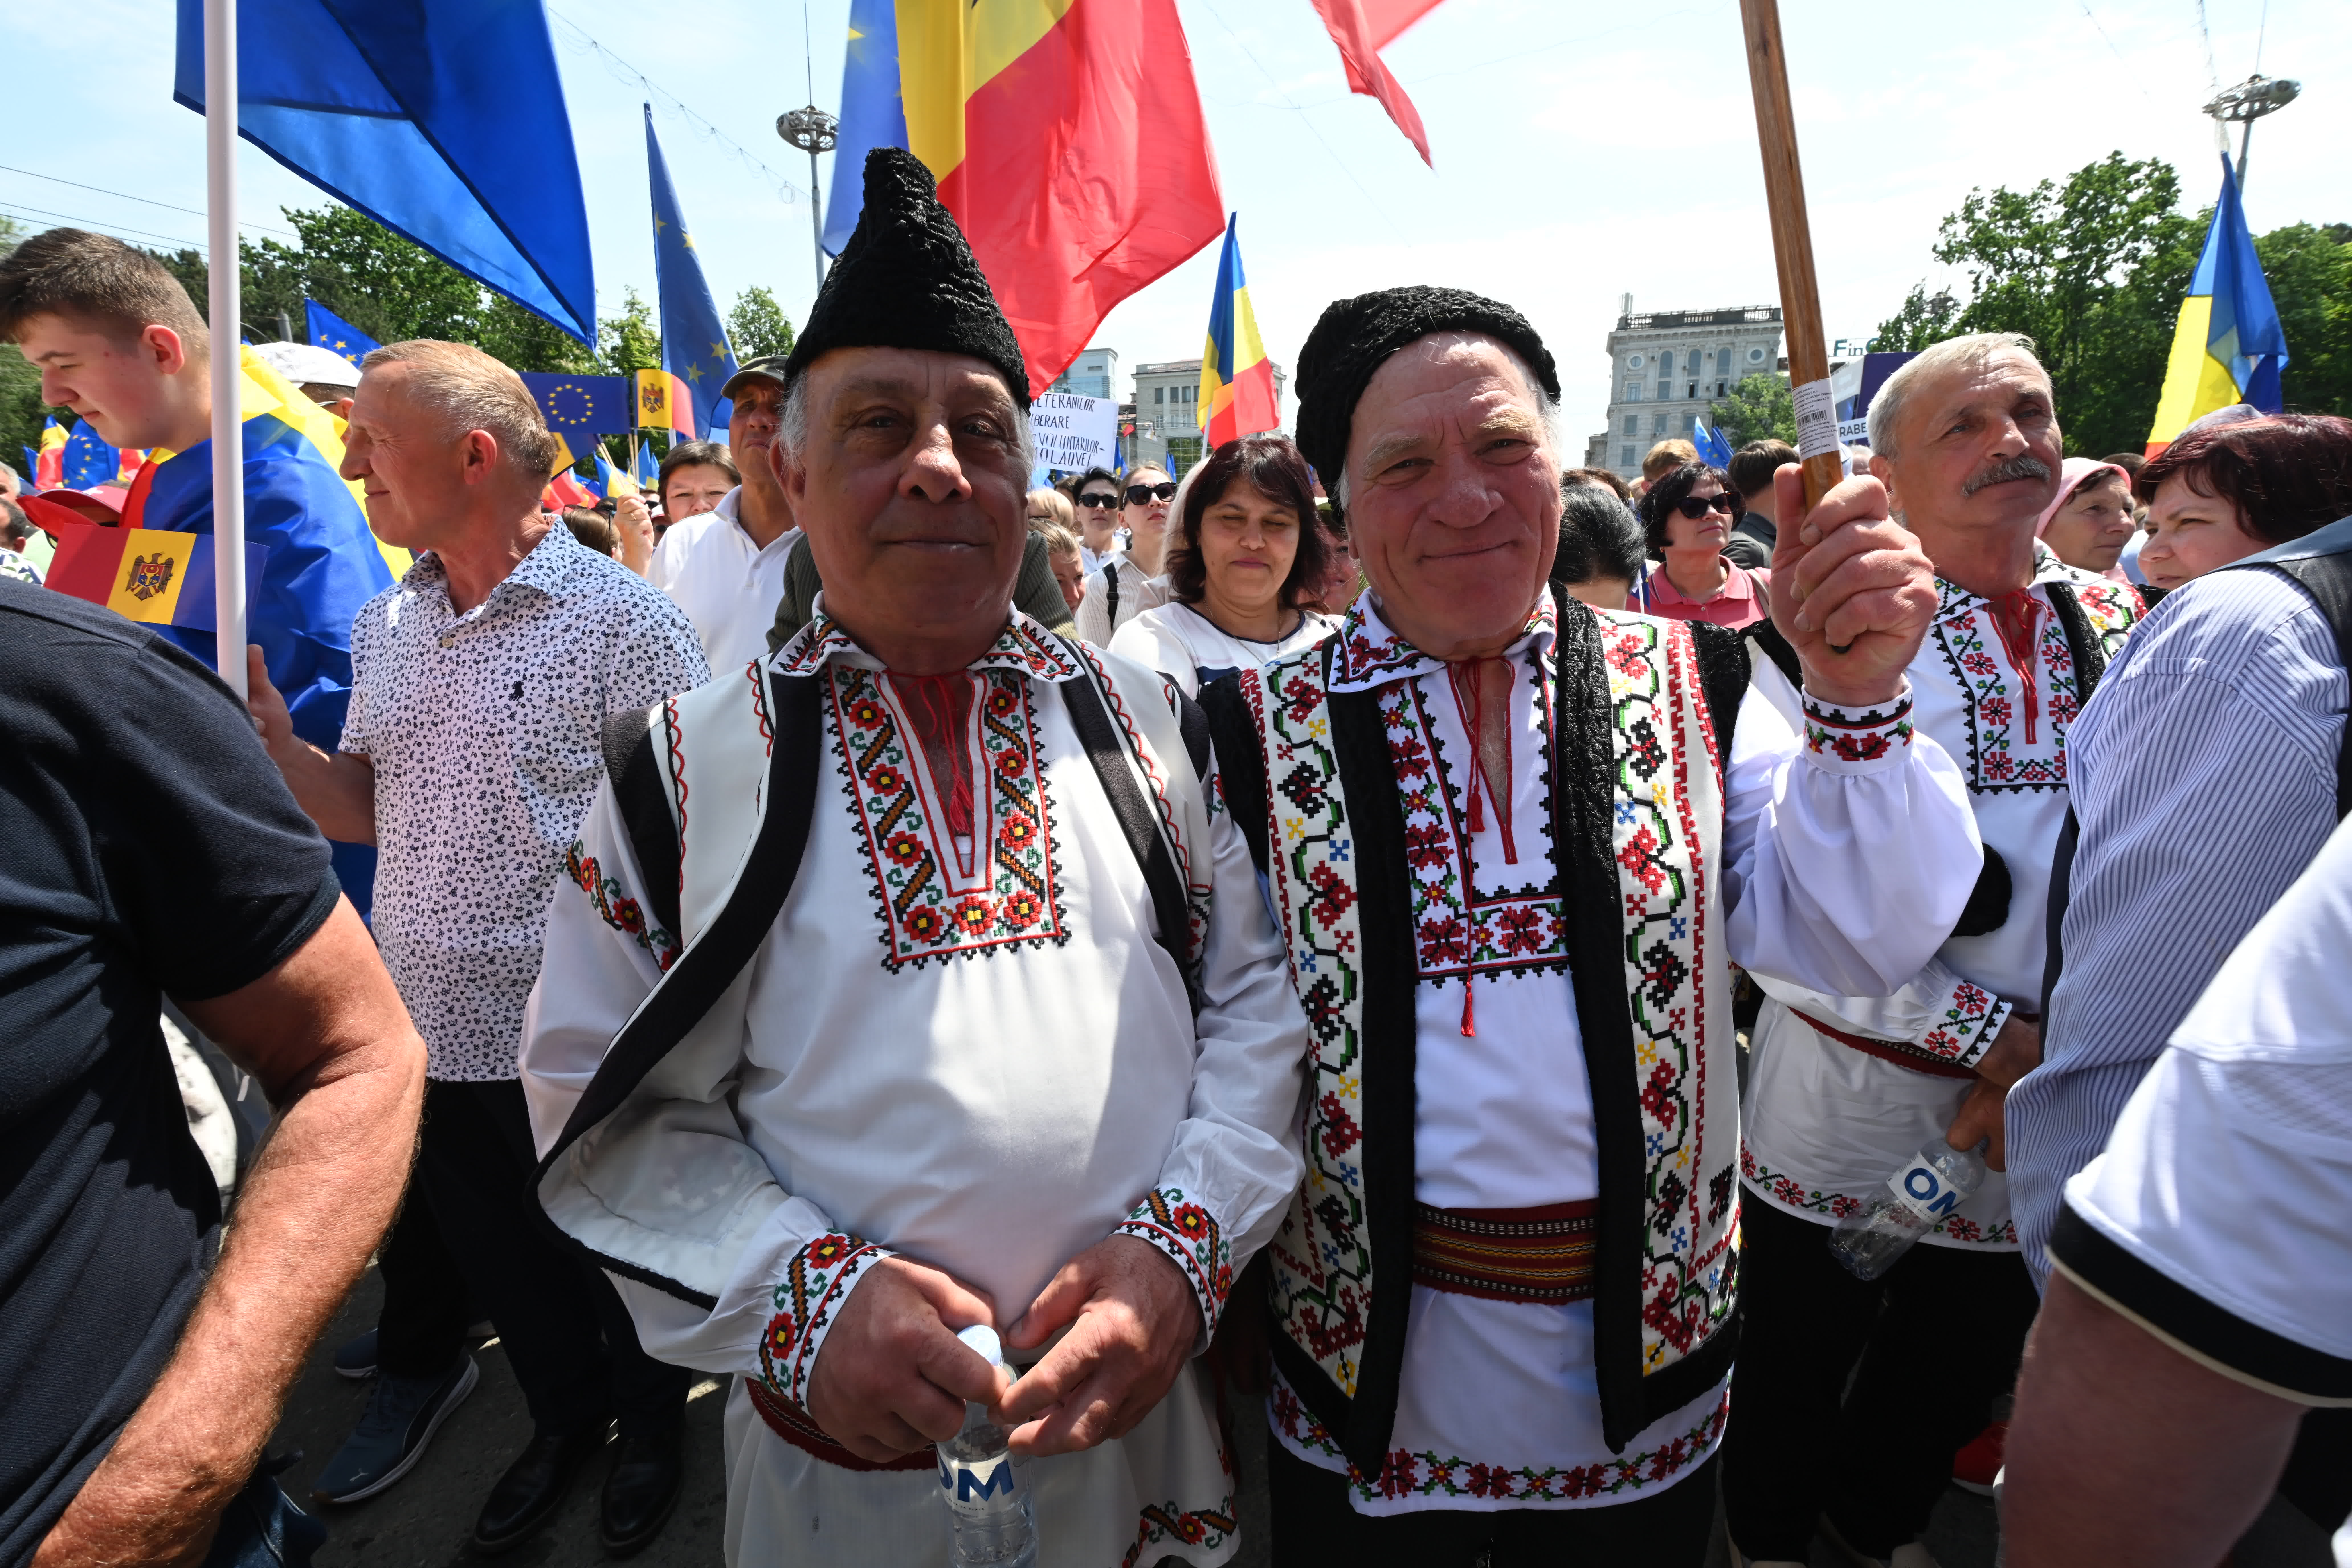 FOTOREPORTAJ Adunarea „Moldova Europeană” – prin obiectivul aparatului foto